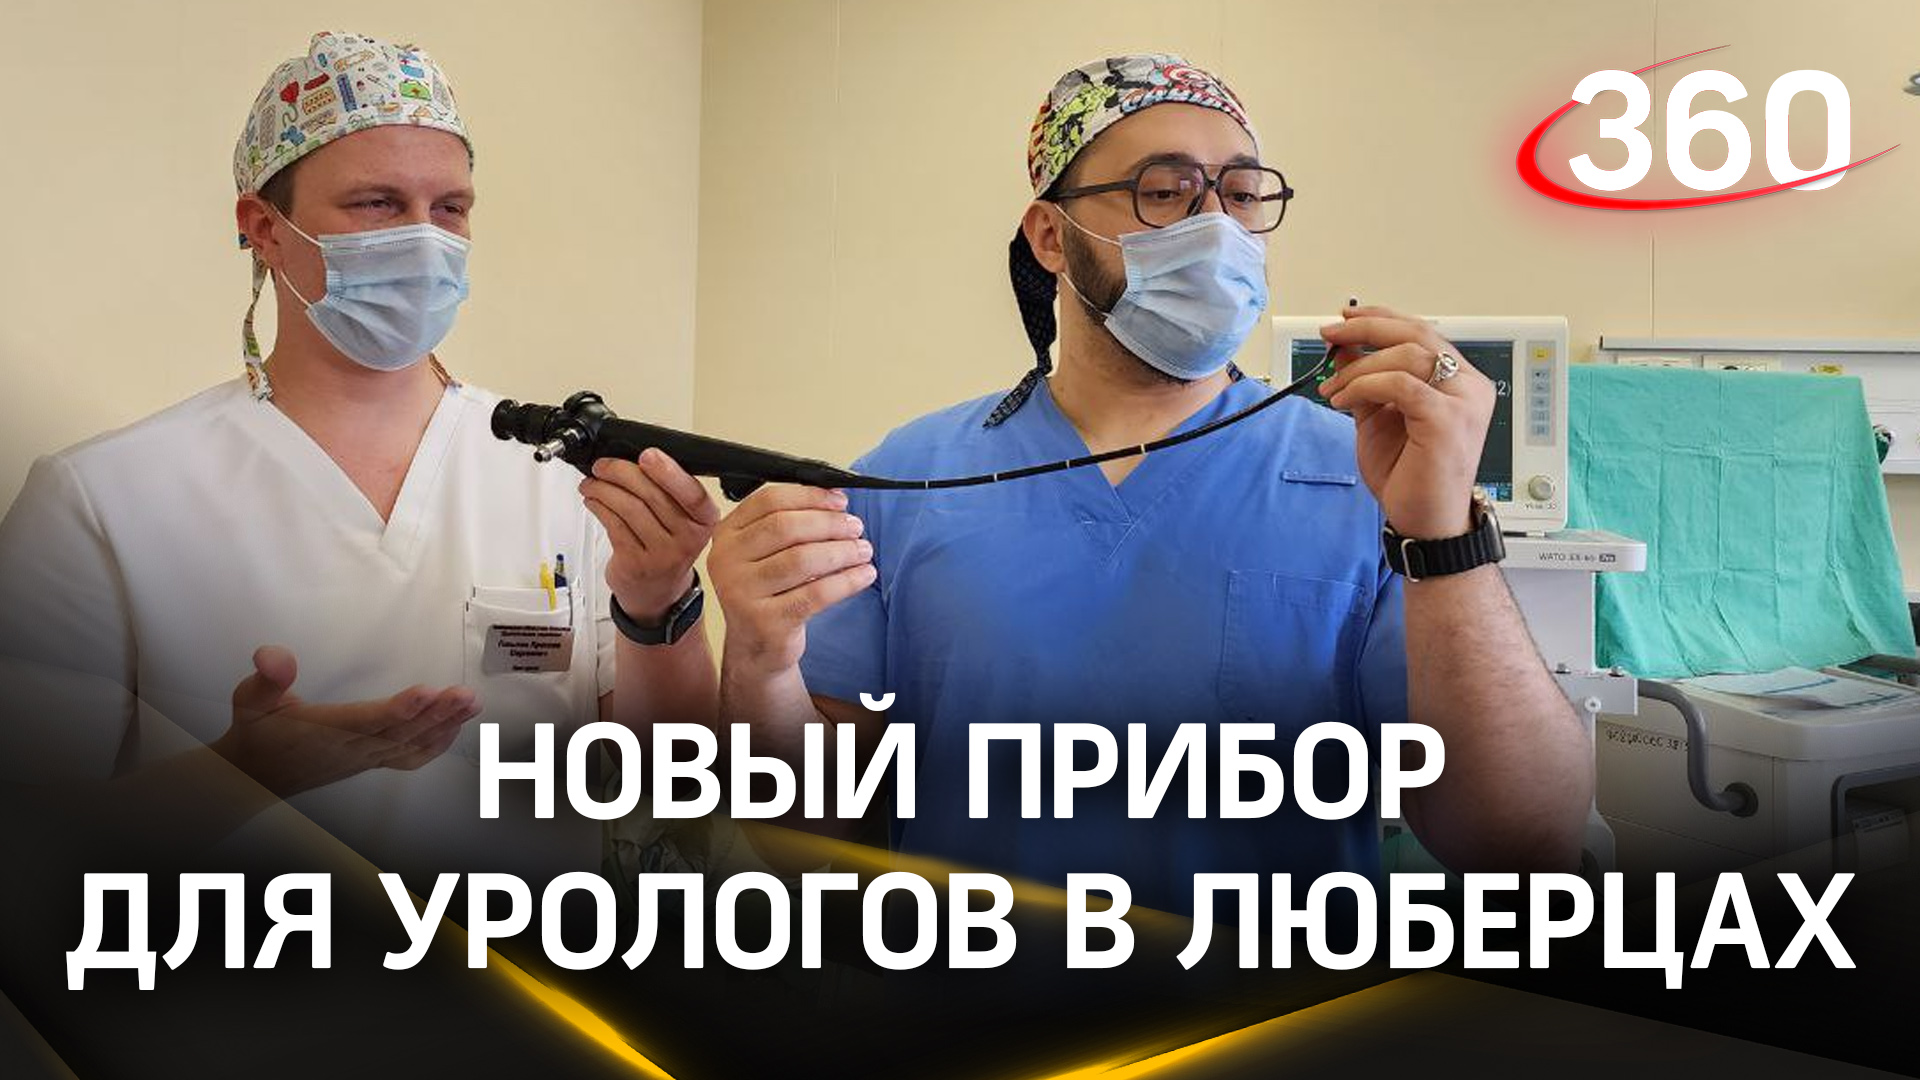 Камни в почках в изображении 4K: современный аппарат для операций появился в Люберецкой больнице